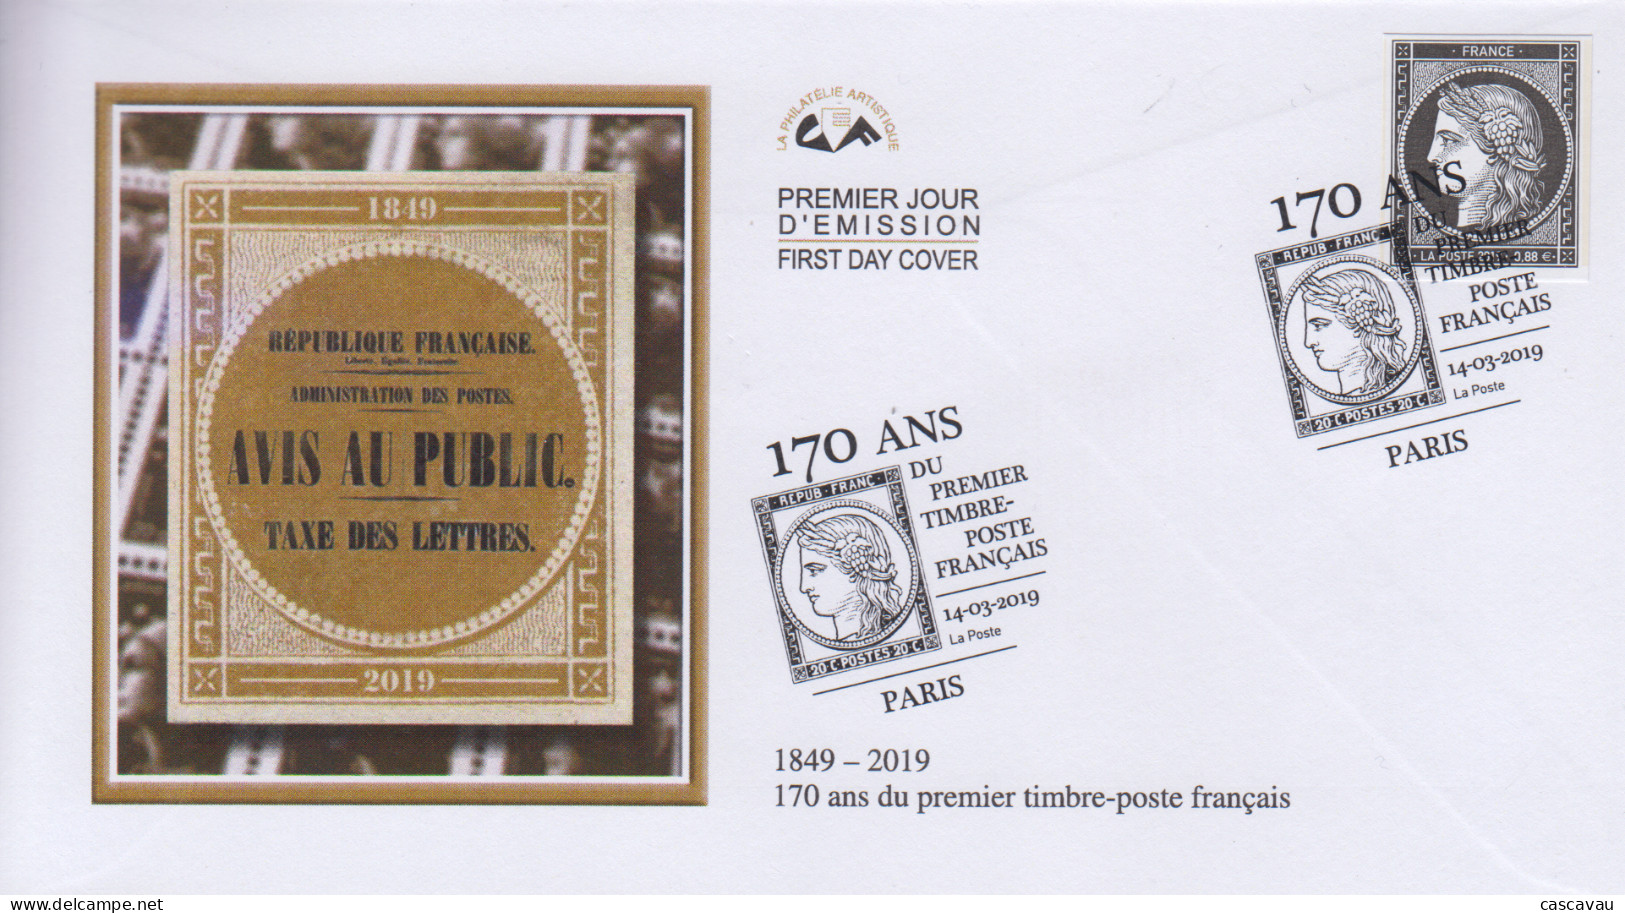 Enveloppe  FDC   1er  Jour   FRANCE   CERES   170  Ans  Du  Premier  Timbre - Poste  Français    2019 - 2010-2019